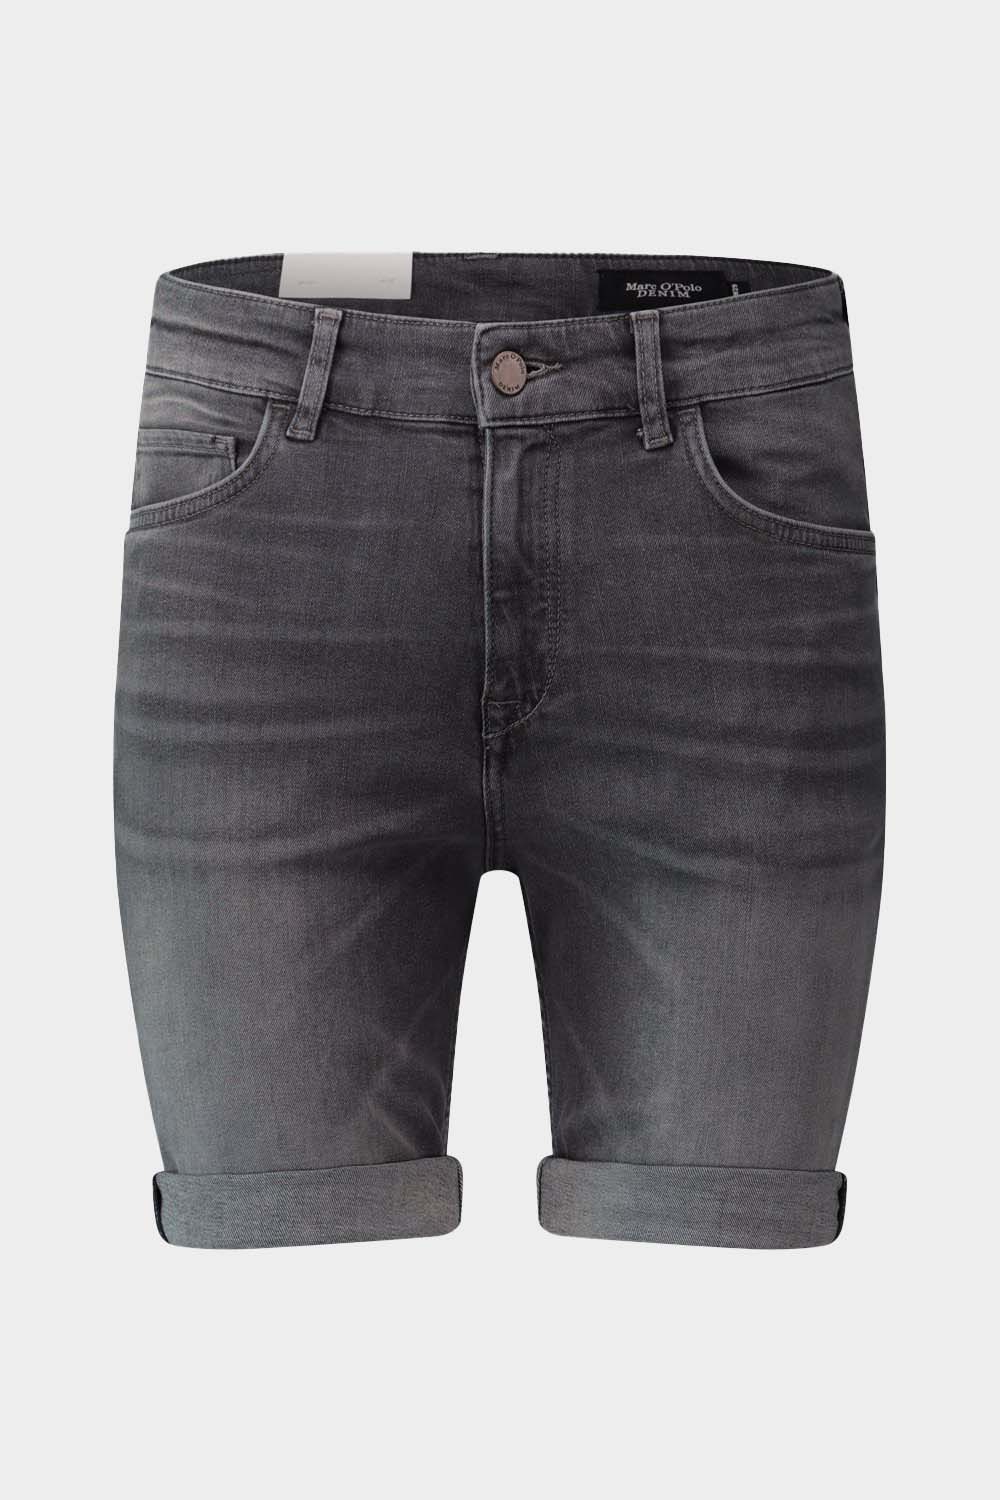 מכנסי ג'ינס לגברים שורט ברמודה MARC O'POLO Vendome online | ונדום .